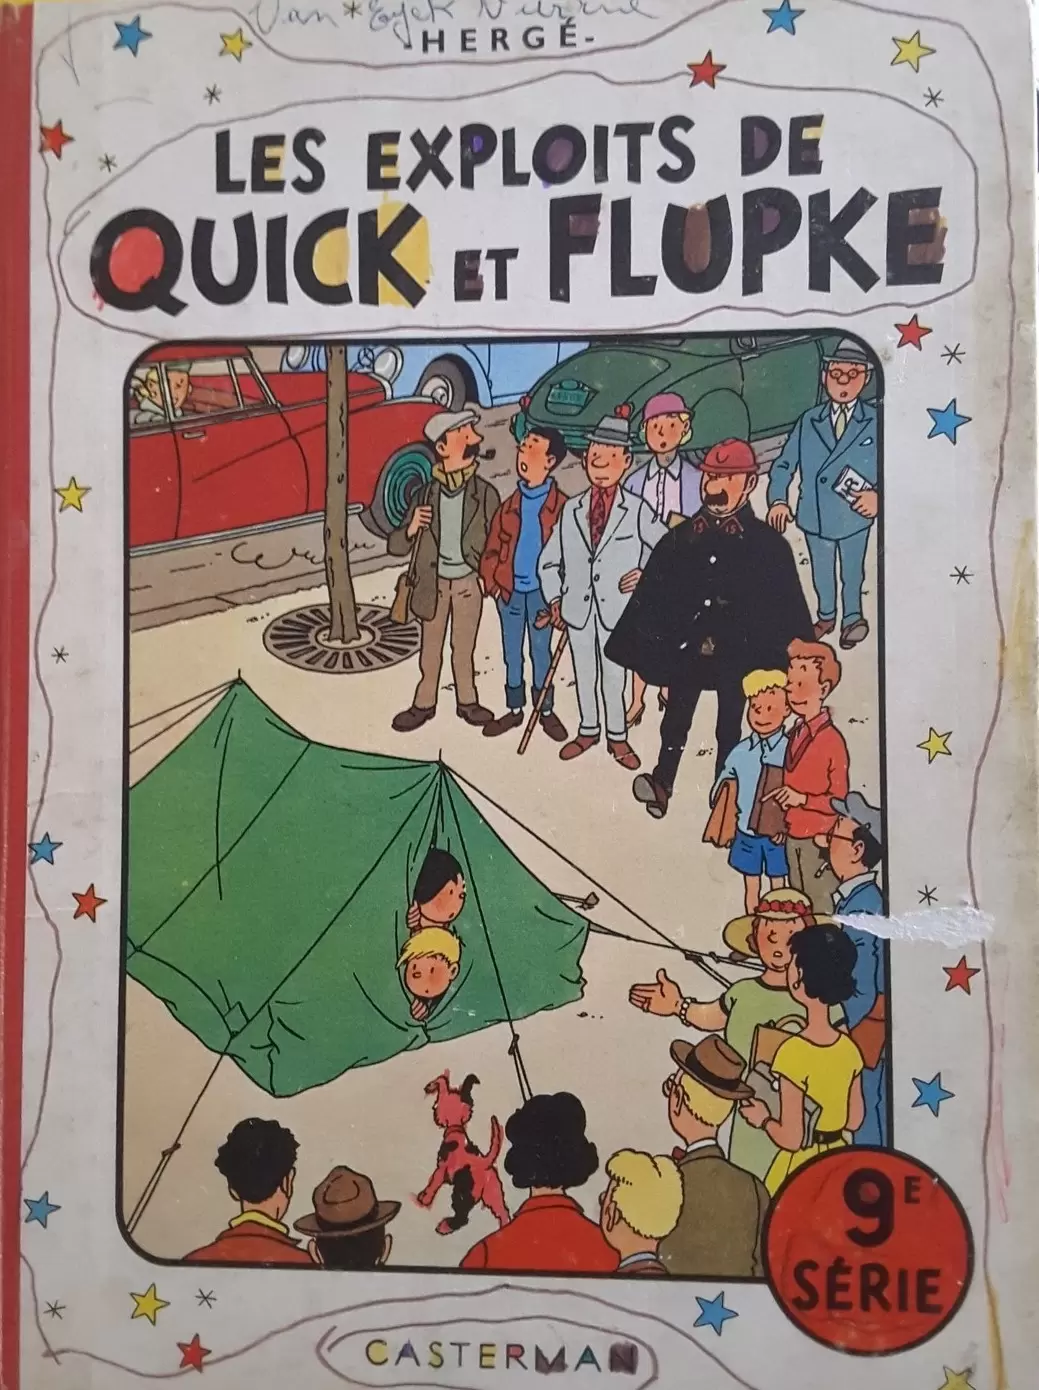 Quick & Flupke - Les exploits de Quick et Flupke 9ème Série